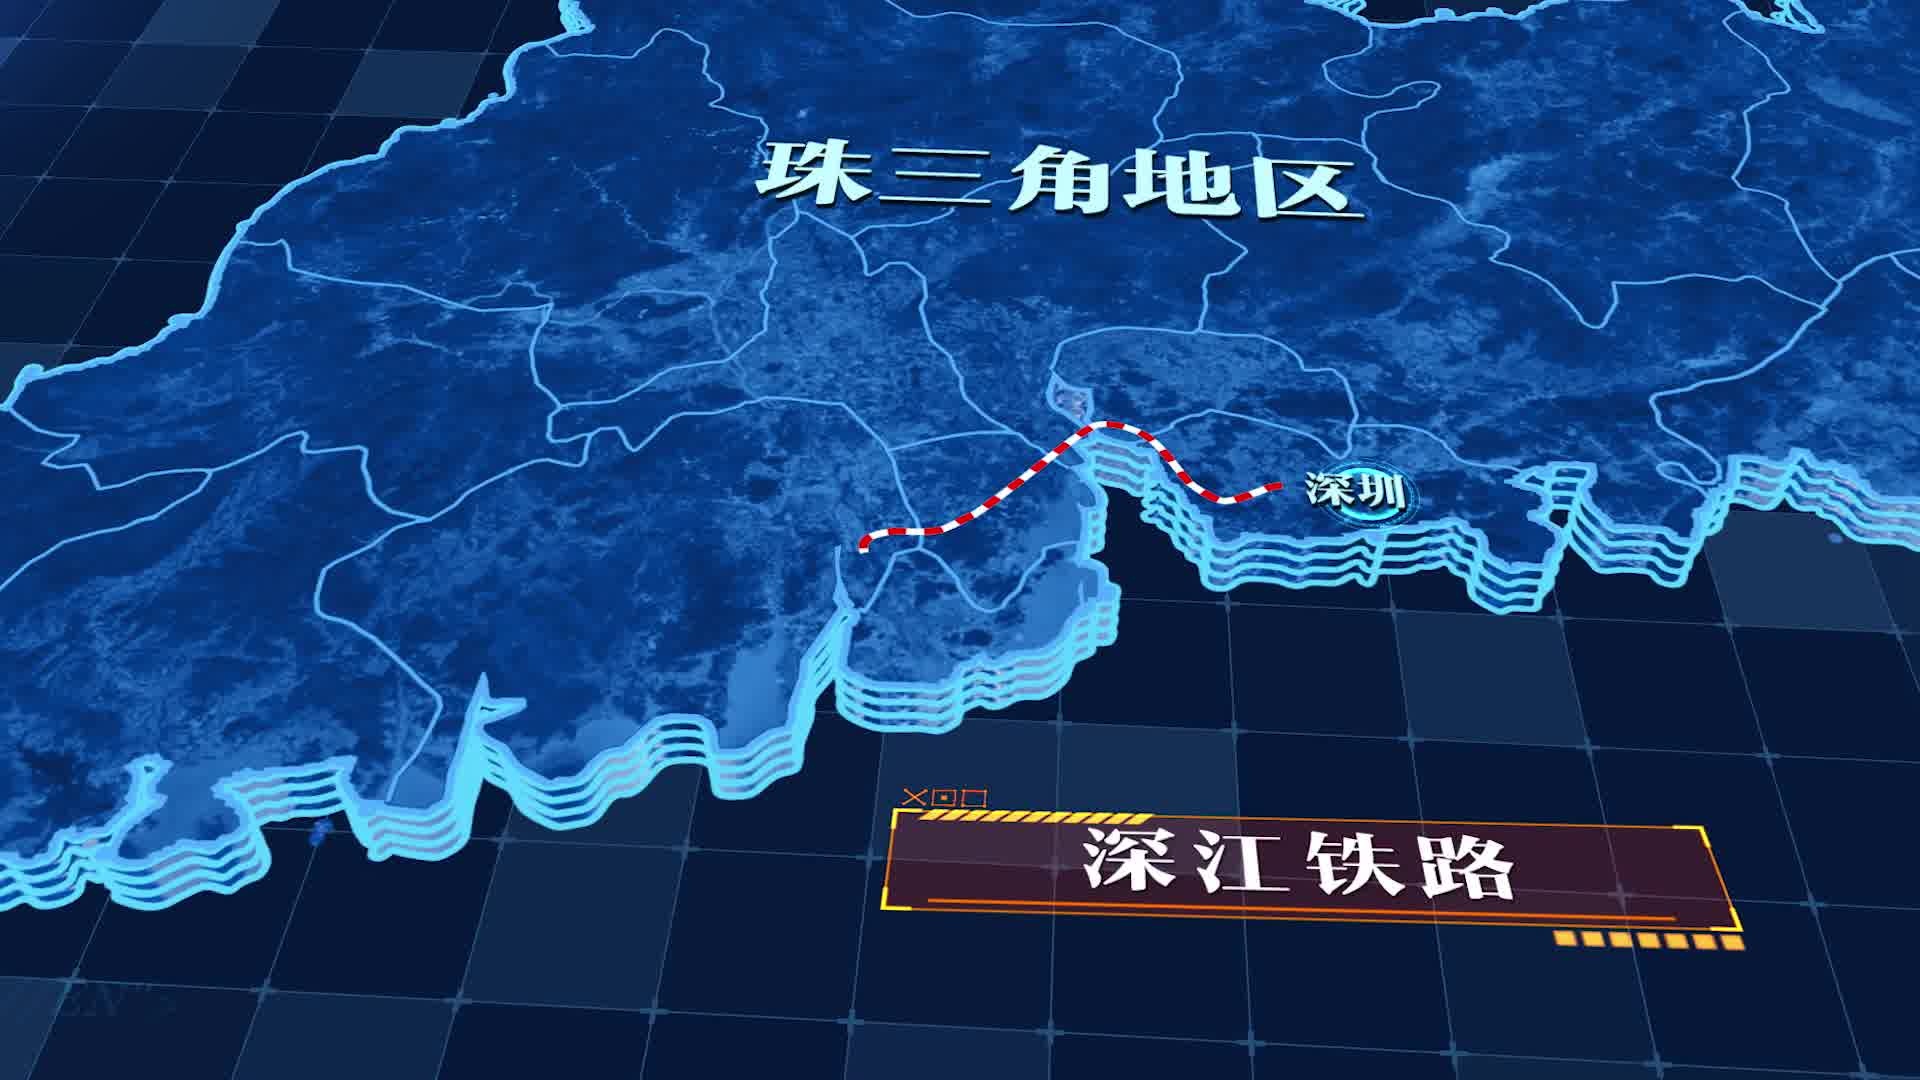 中铁十四局集团有限公司获悉,由该公司参建的新建深圳至江门铁路珠江